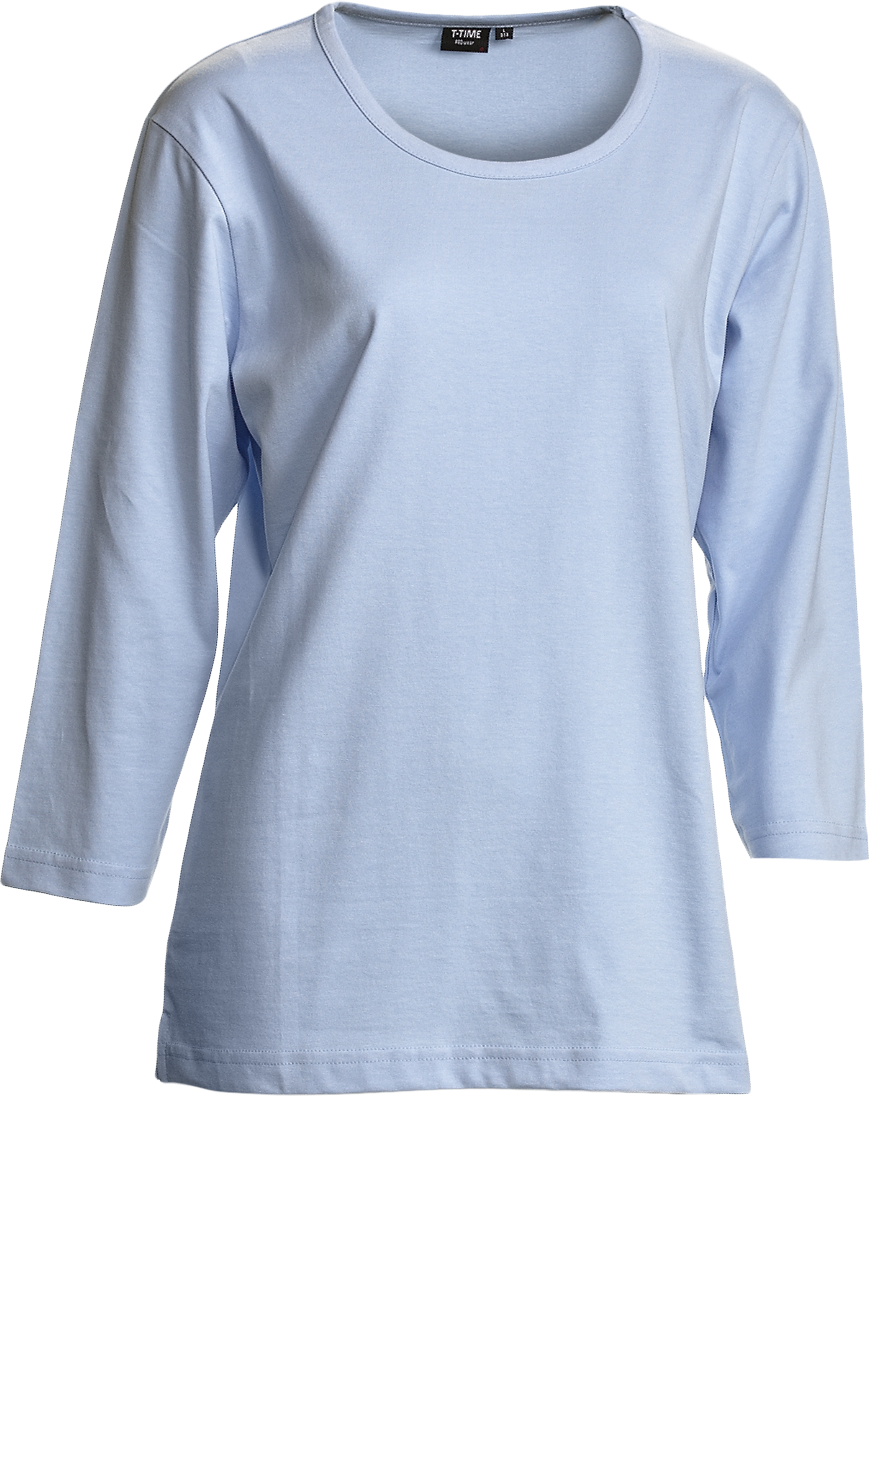 Ljusblå Dam T-shirt 3/4 ärm, Prowear (7150191) 